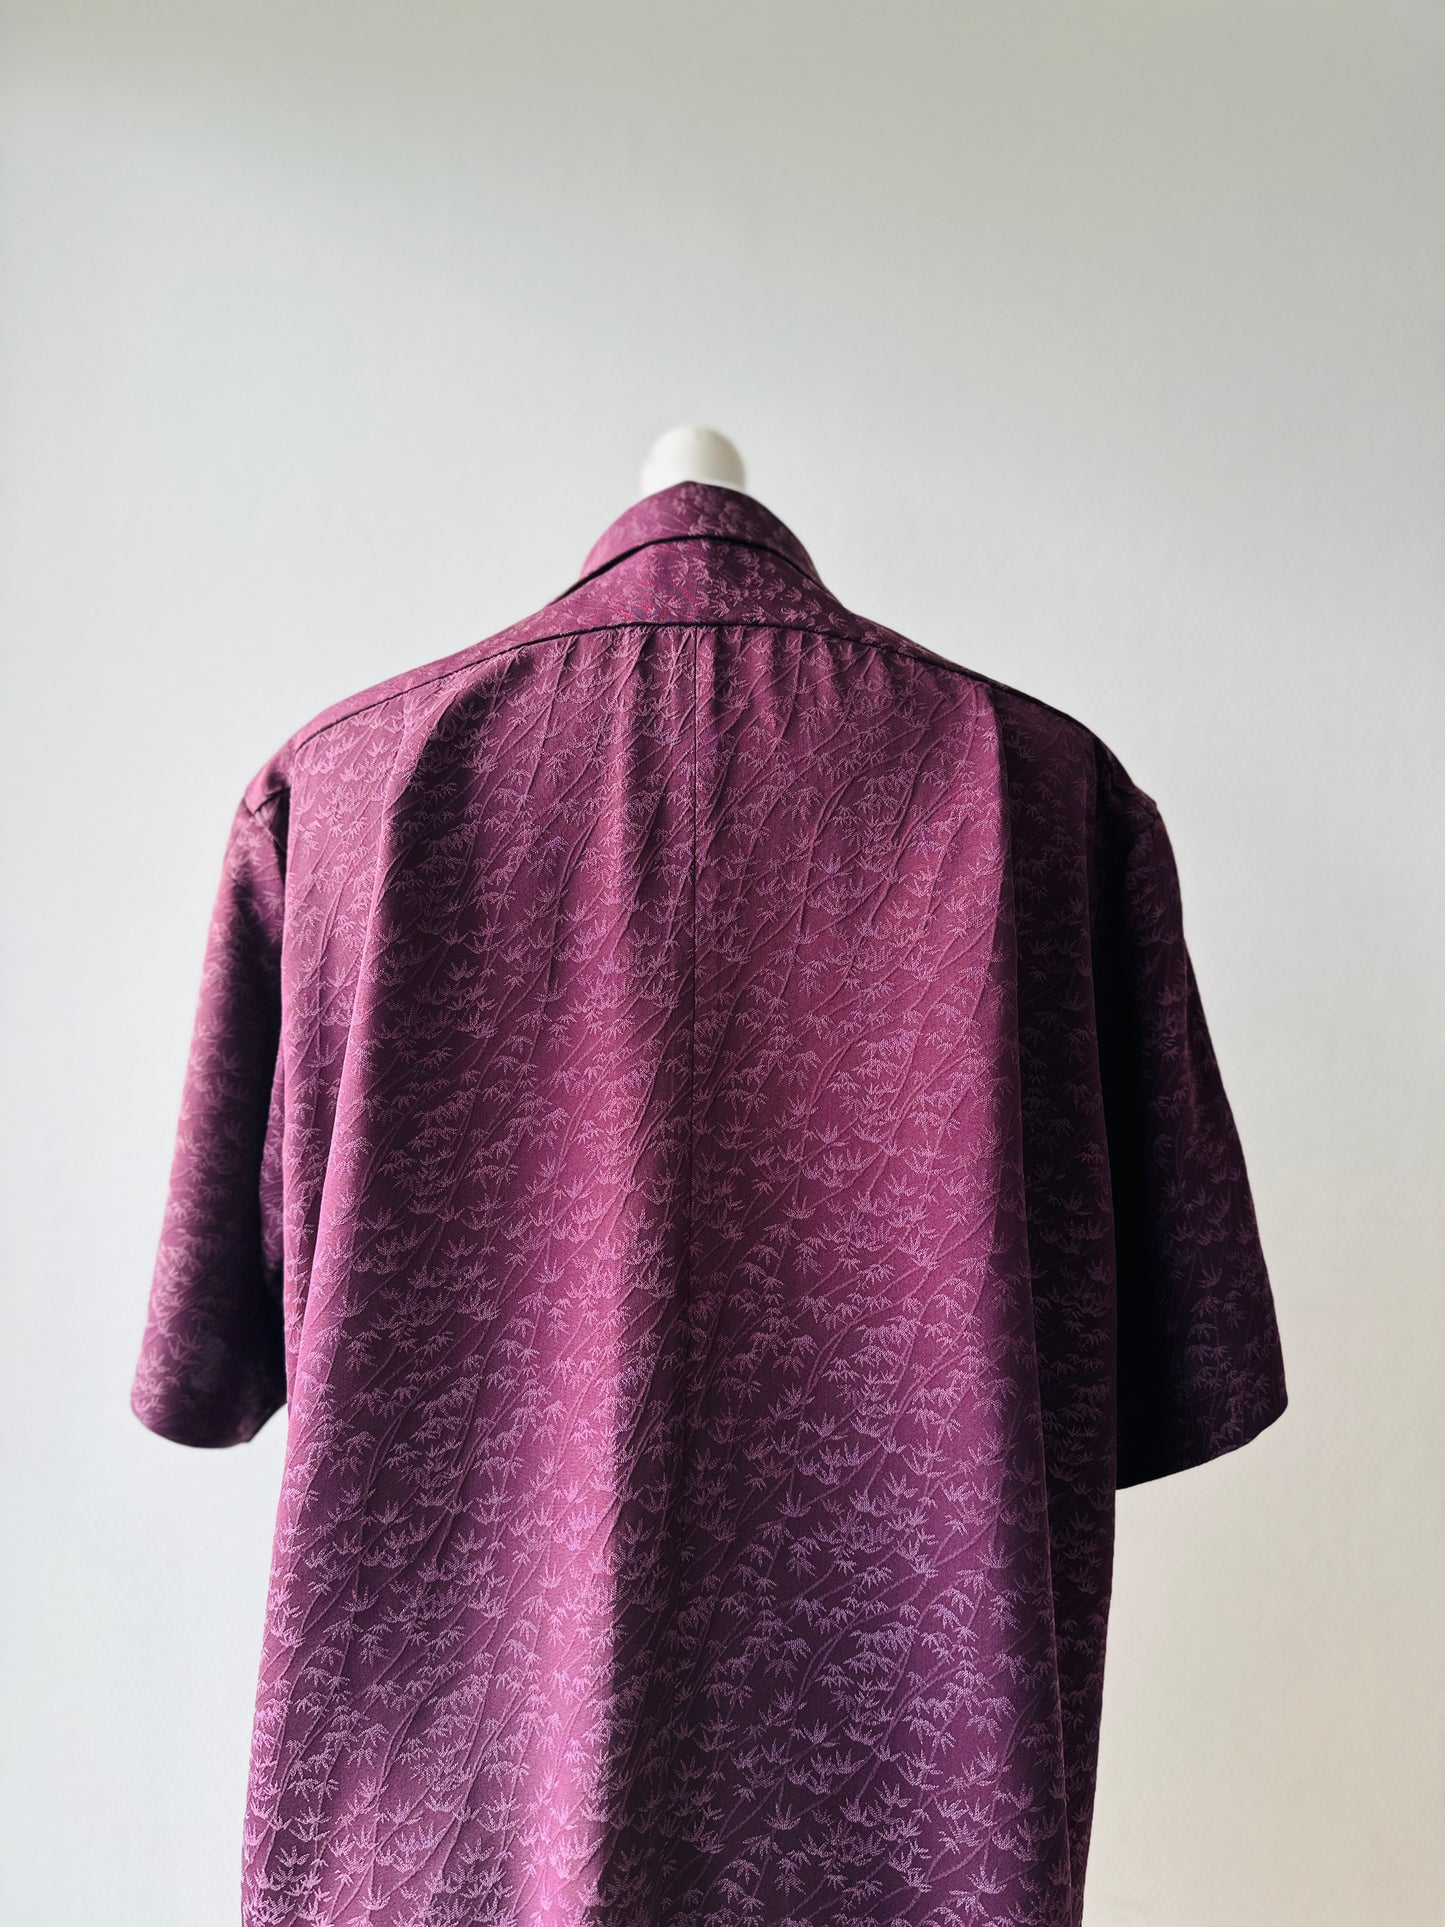 【Purple, Banbooo】 Shirt / Taille hawaïen: L ＜ Nouveau ・ Silk ＞ pour les hommes, pour les femmes, le kimono japonais, les vêtements unisexes du Japon, l'unisexe, les cadeaux japonais, l'article original